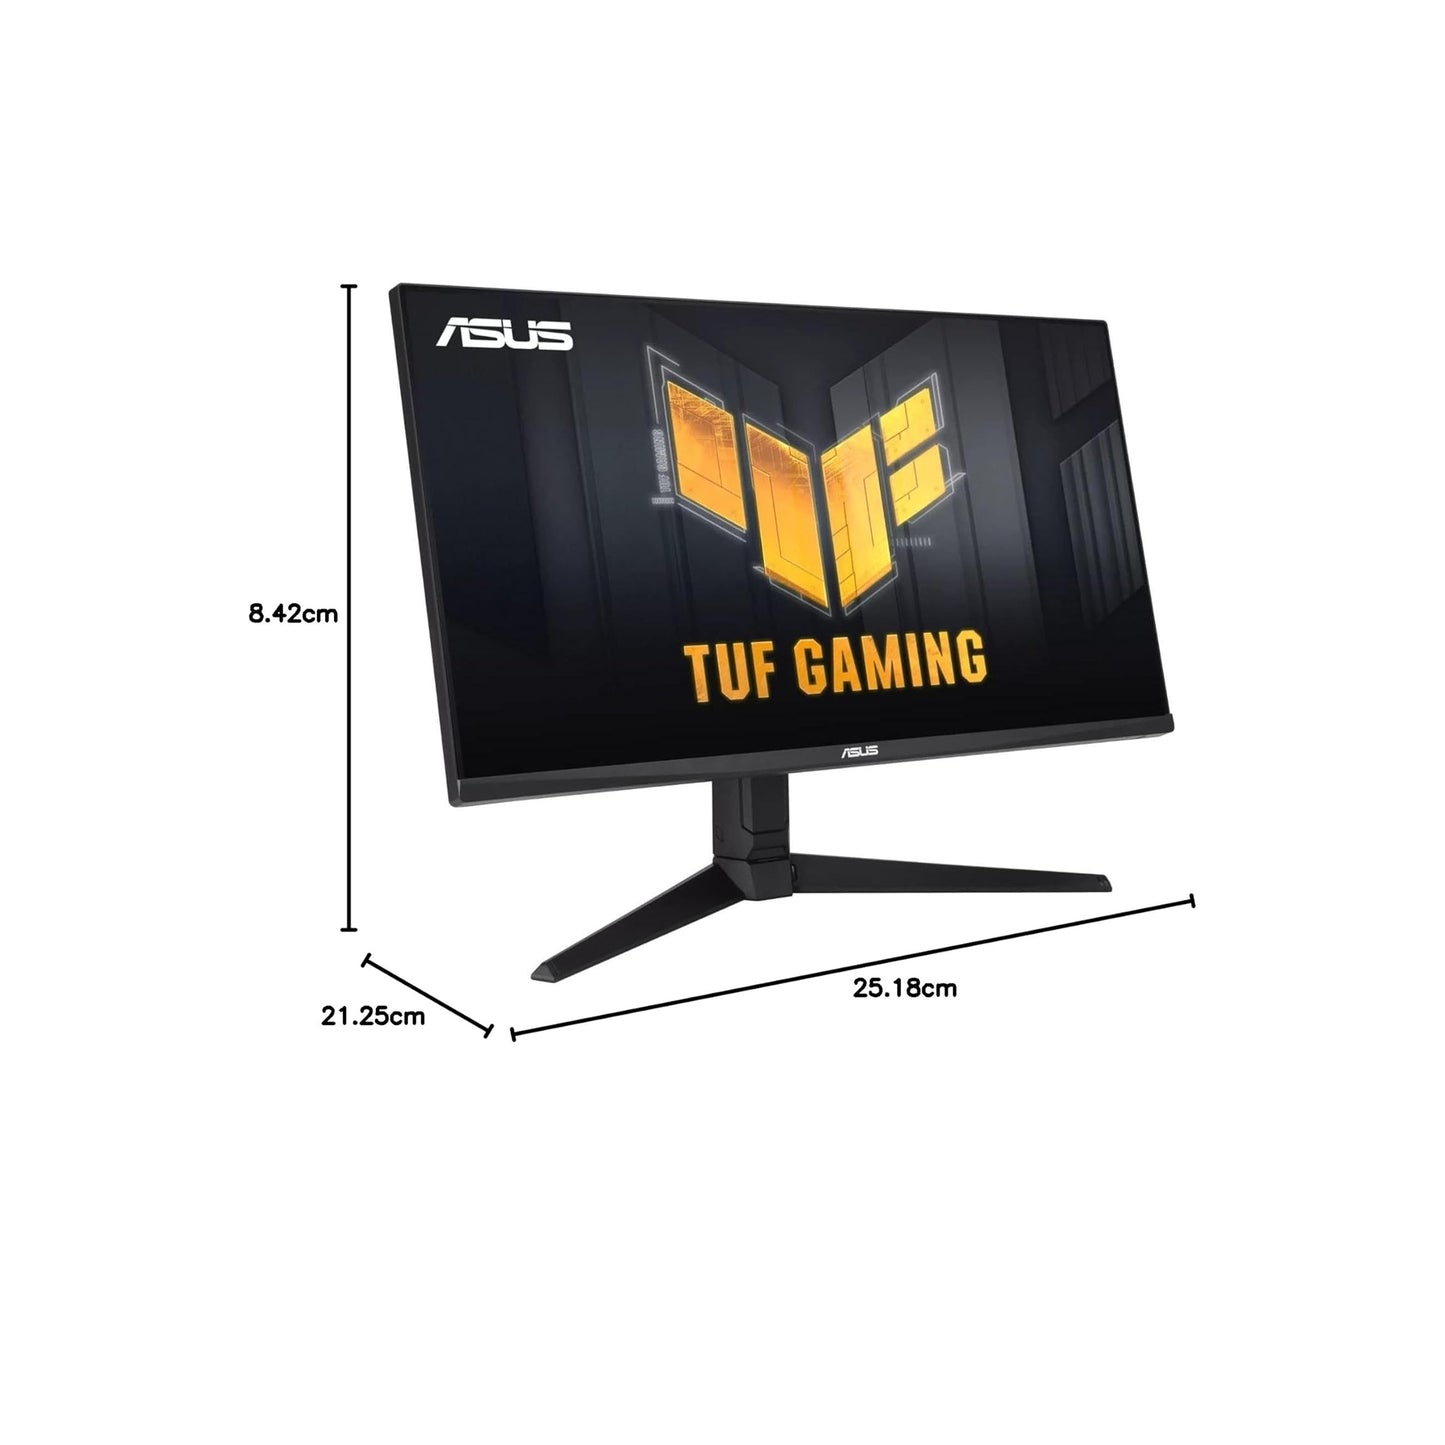 ASUS TUF Gaming 28 بوصة 4K 144HZ DSC HDMI 2.1، شاشة (VG28UQL1A) - UHD (3840 × 2160)، IPS سريع، 1 مللي ثانية، مزامنة ضبابية الحركة المنخفضة للغاية، متوافقة مع G-SYNC، FreeSync Premium، العناية بالعين، DCI-P3 90% ،أسود 